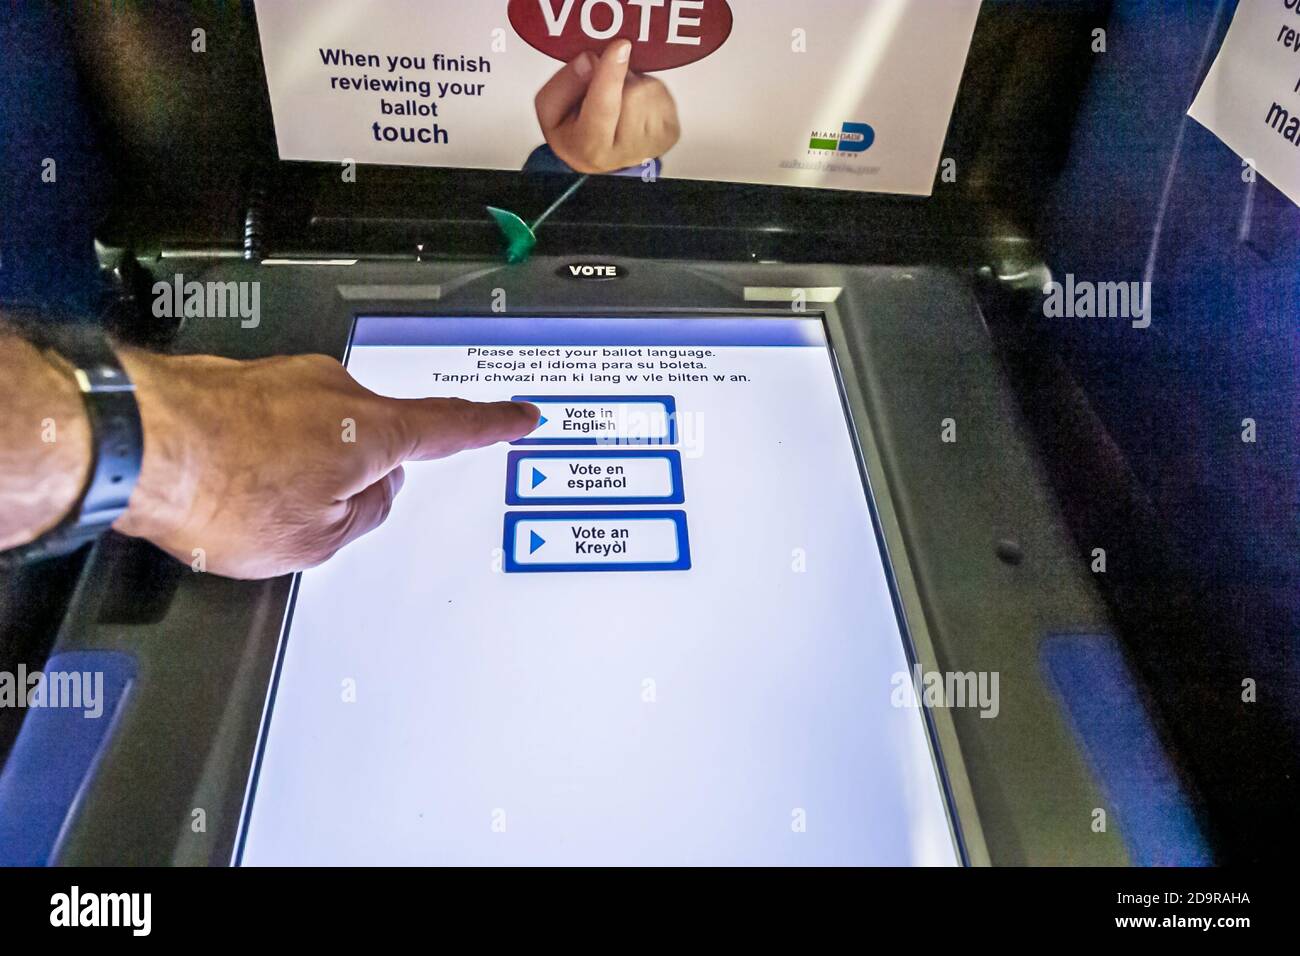 Miami Beach Florida, giorno della primaria democratica, votatrice elettronica touch screen illuminato, voto inglese spagnolo creolo più lingue, Foto Stock